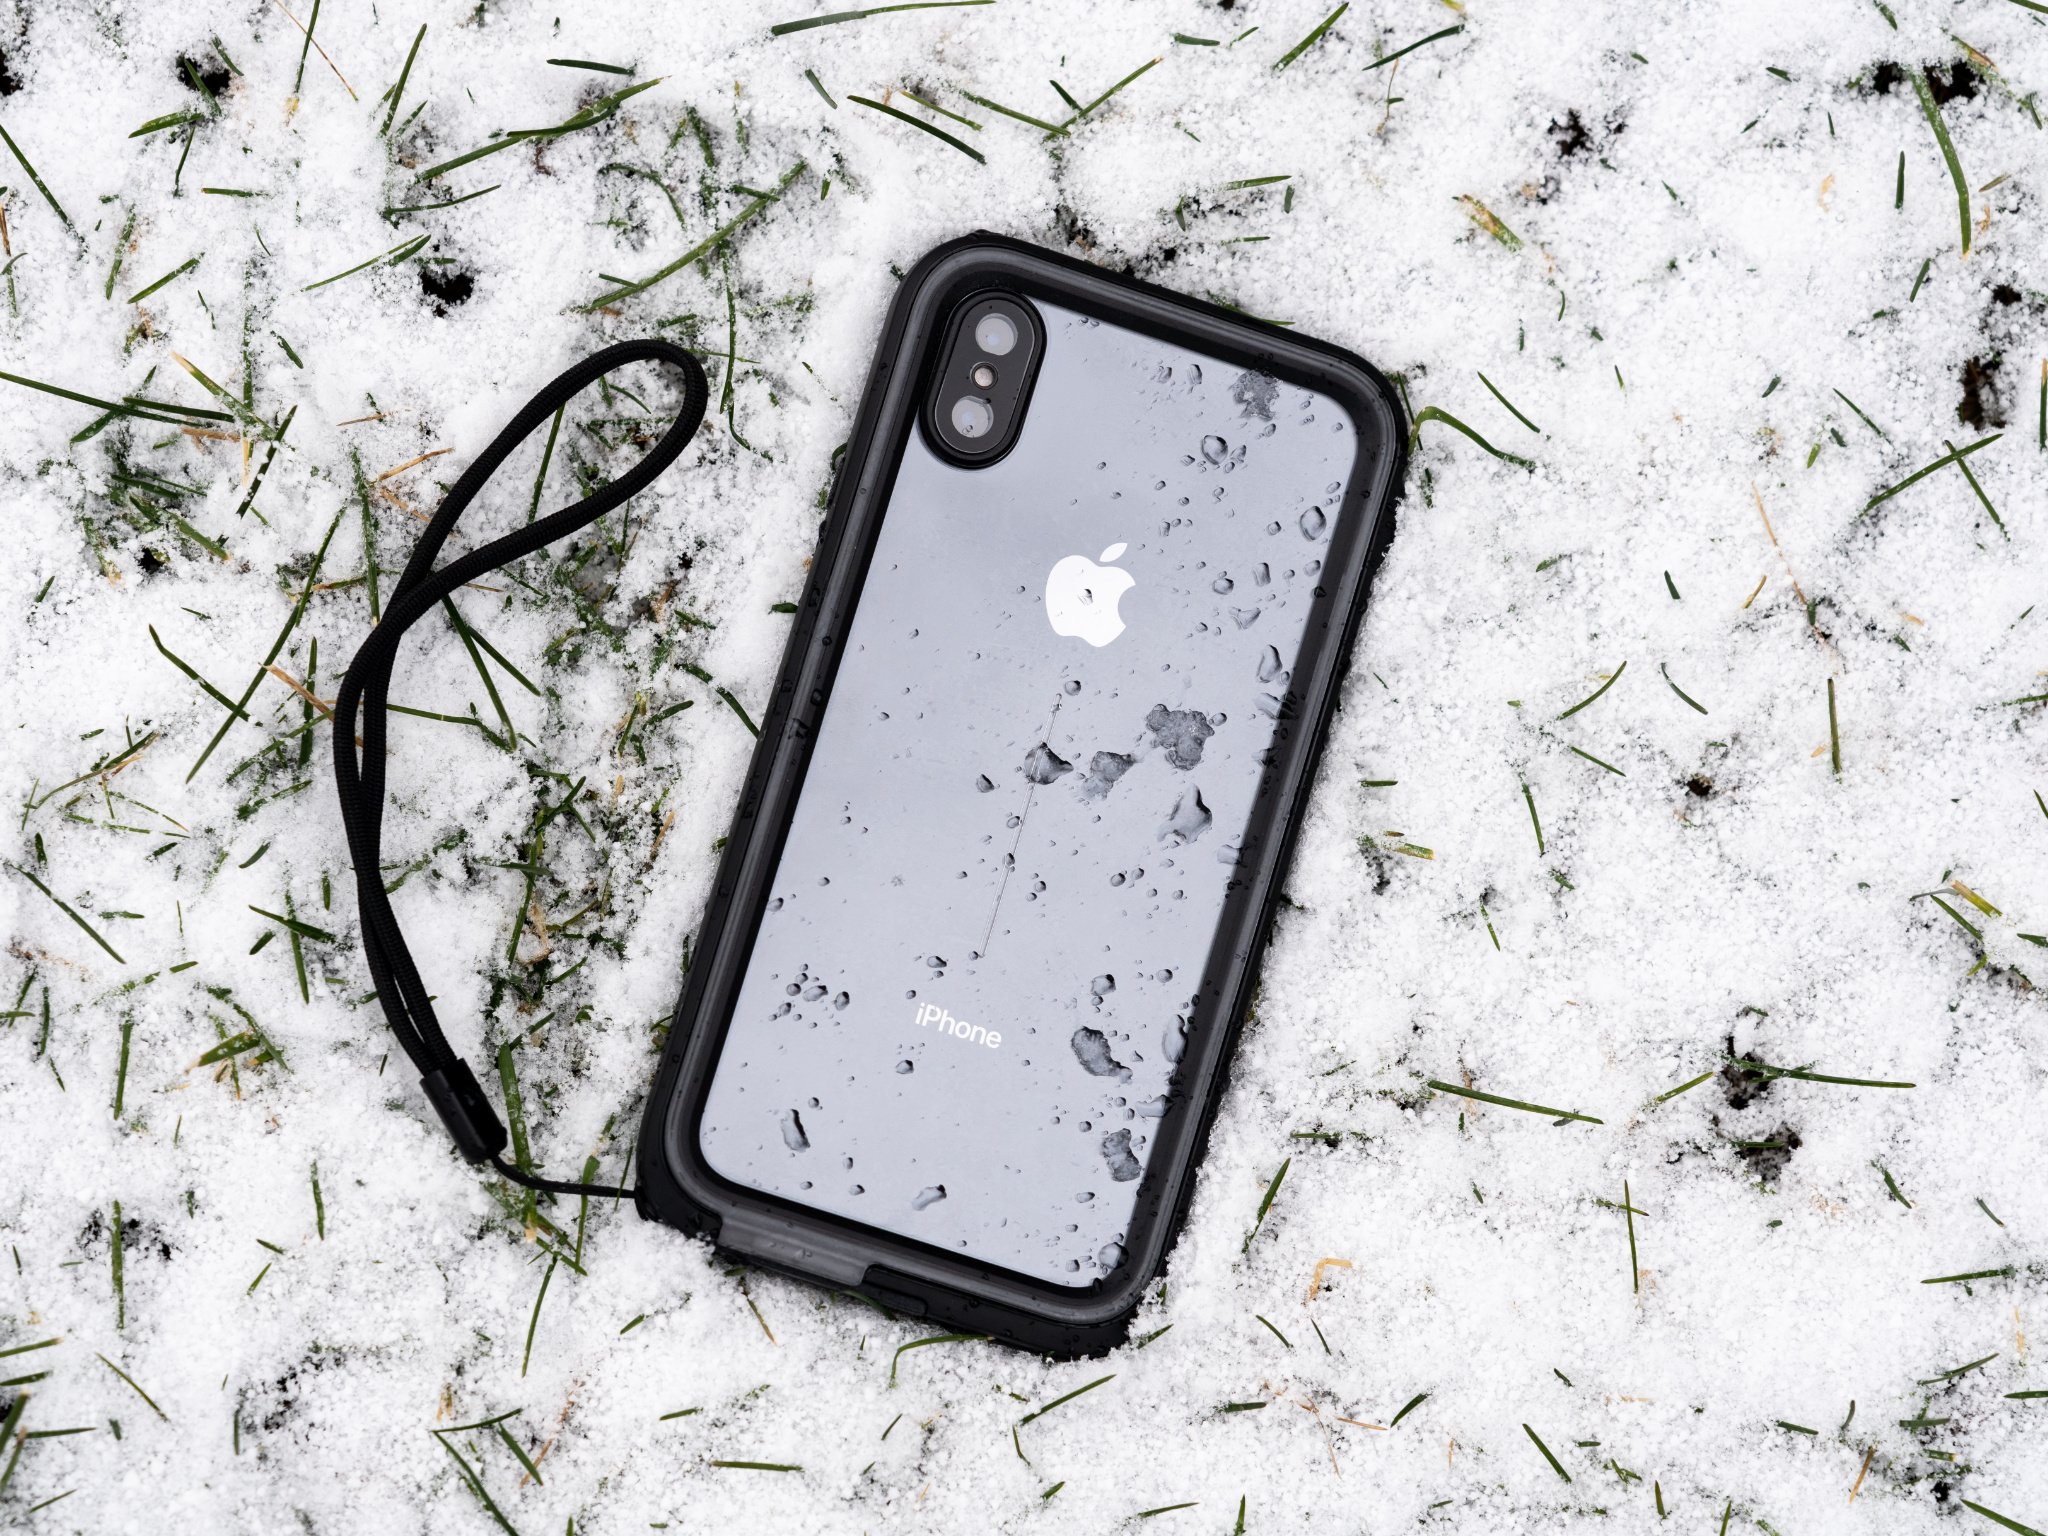  is the iPhone XR waterproof